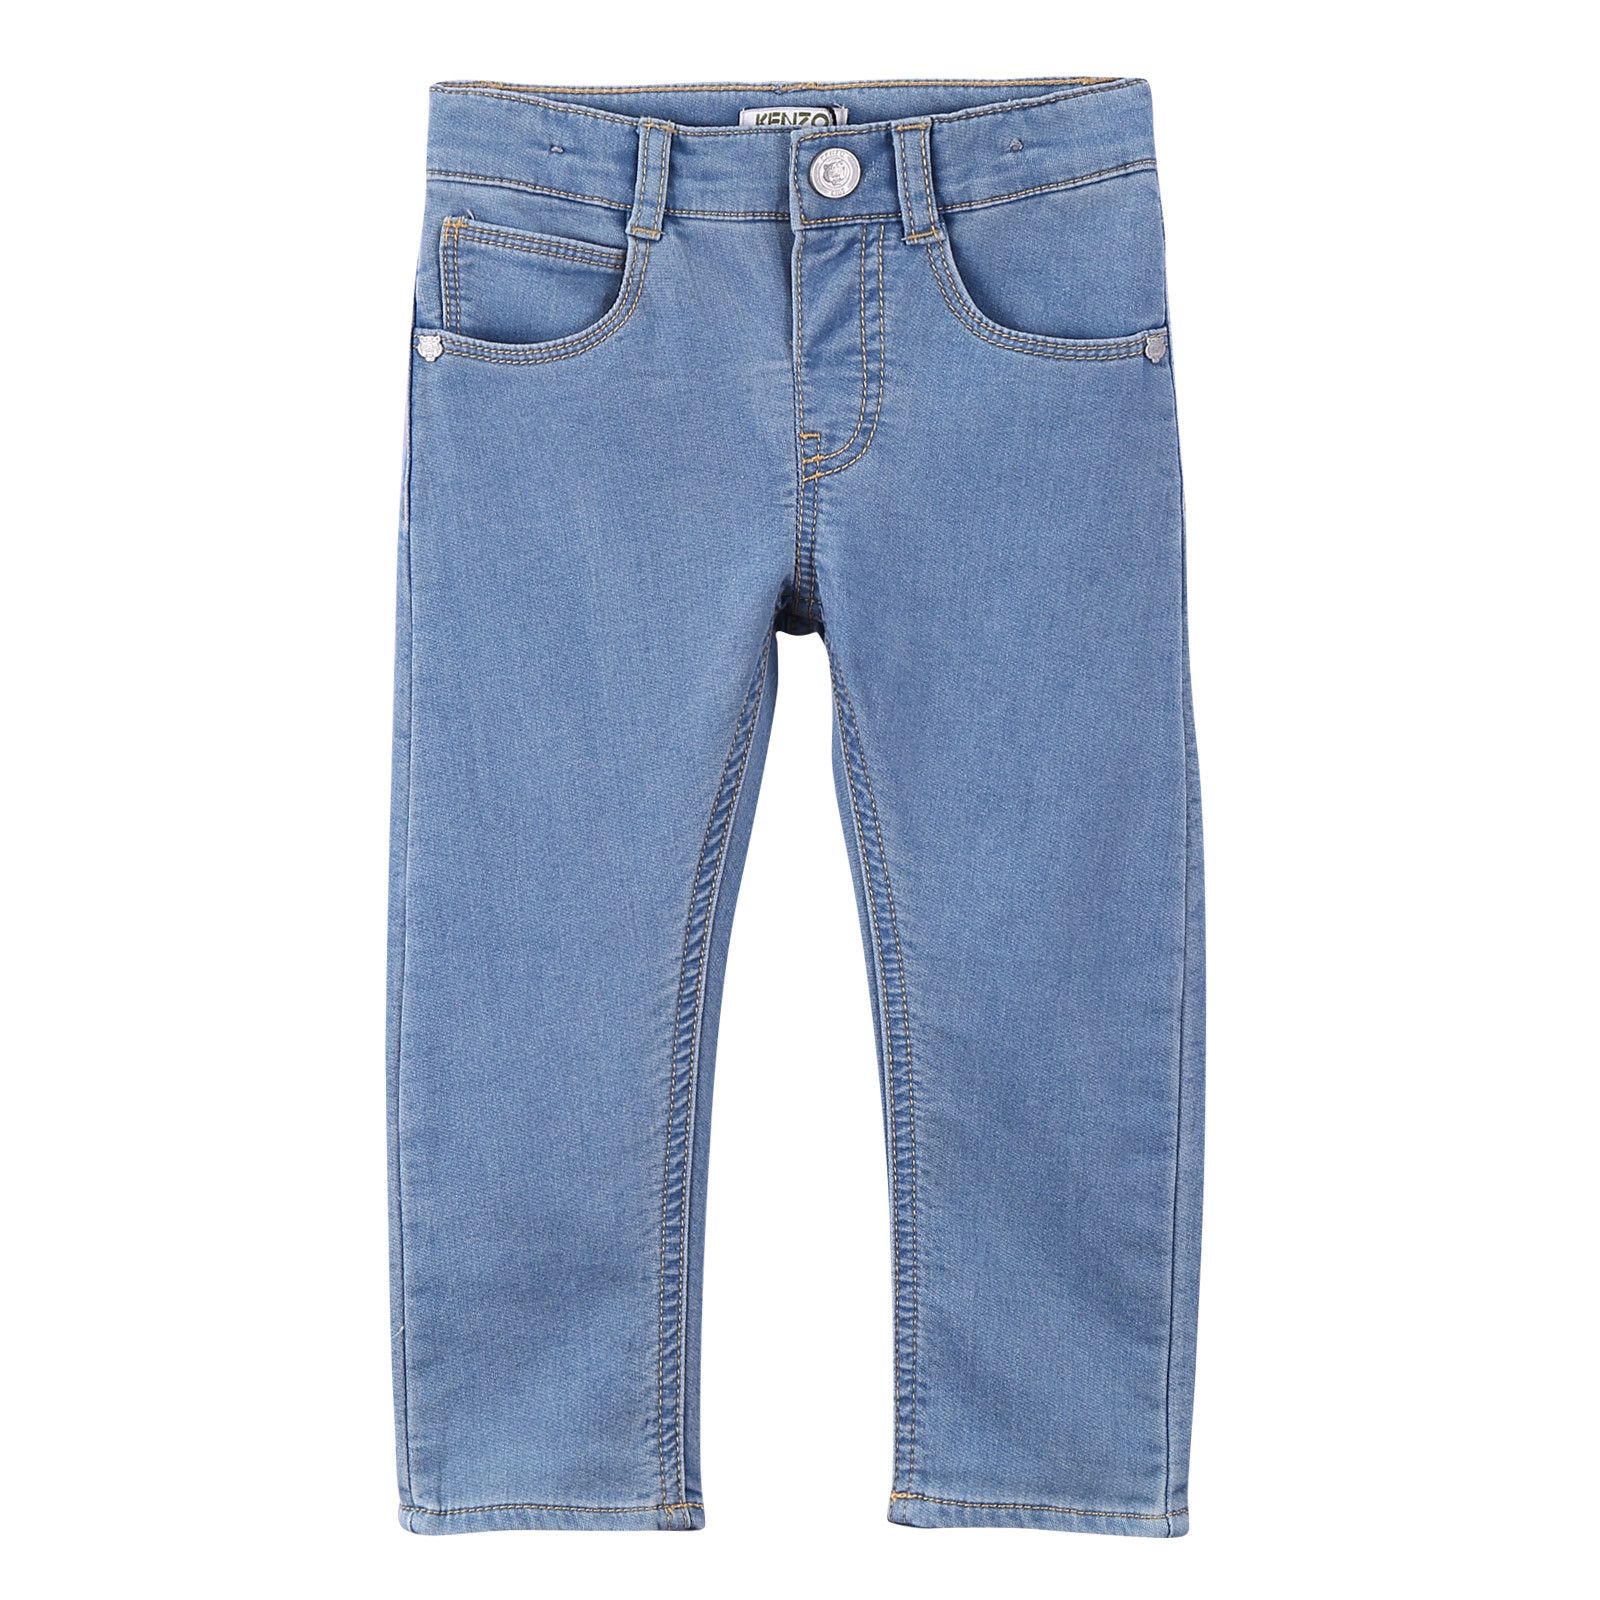 Boys Light Blue Cotton Denim Jeans - CÉMAROSE | Children's Fashion Store - 1